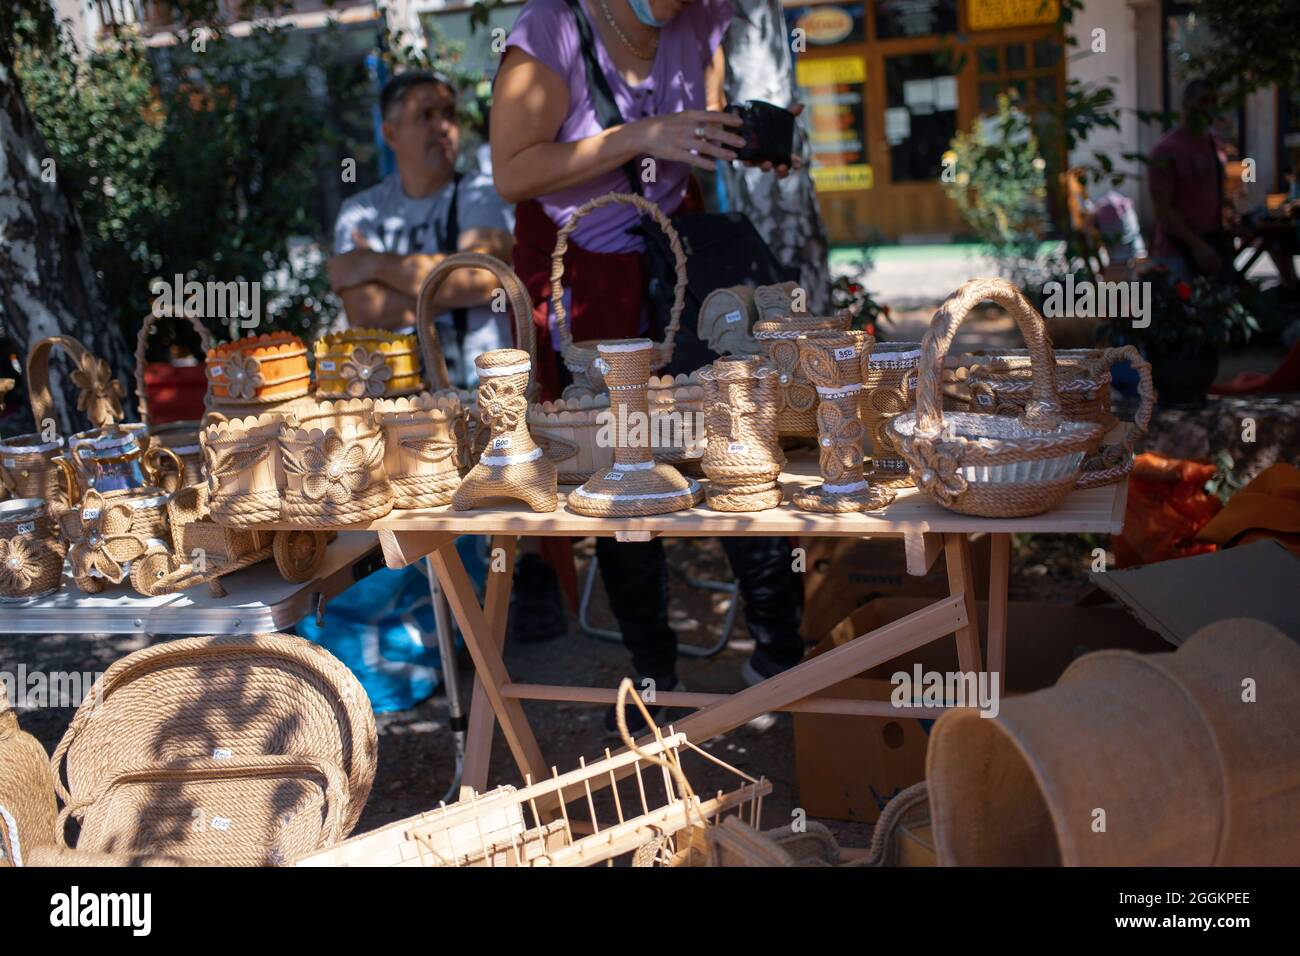 Objets d'artisanat en vente à une foire du village Banque D'Images